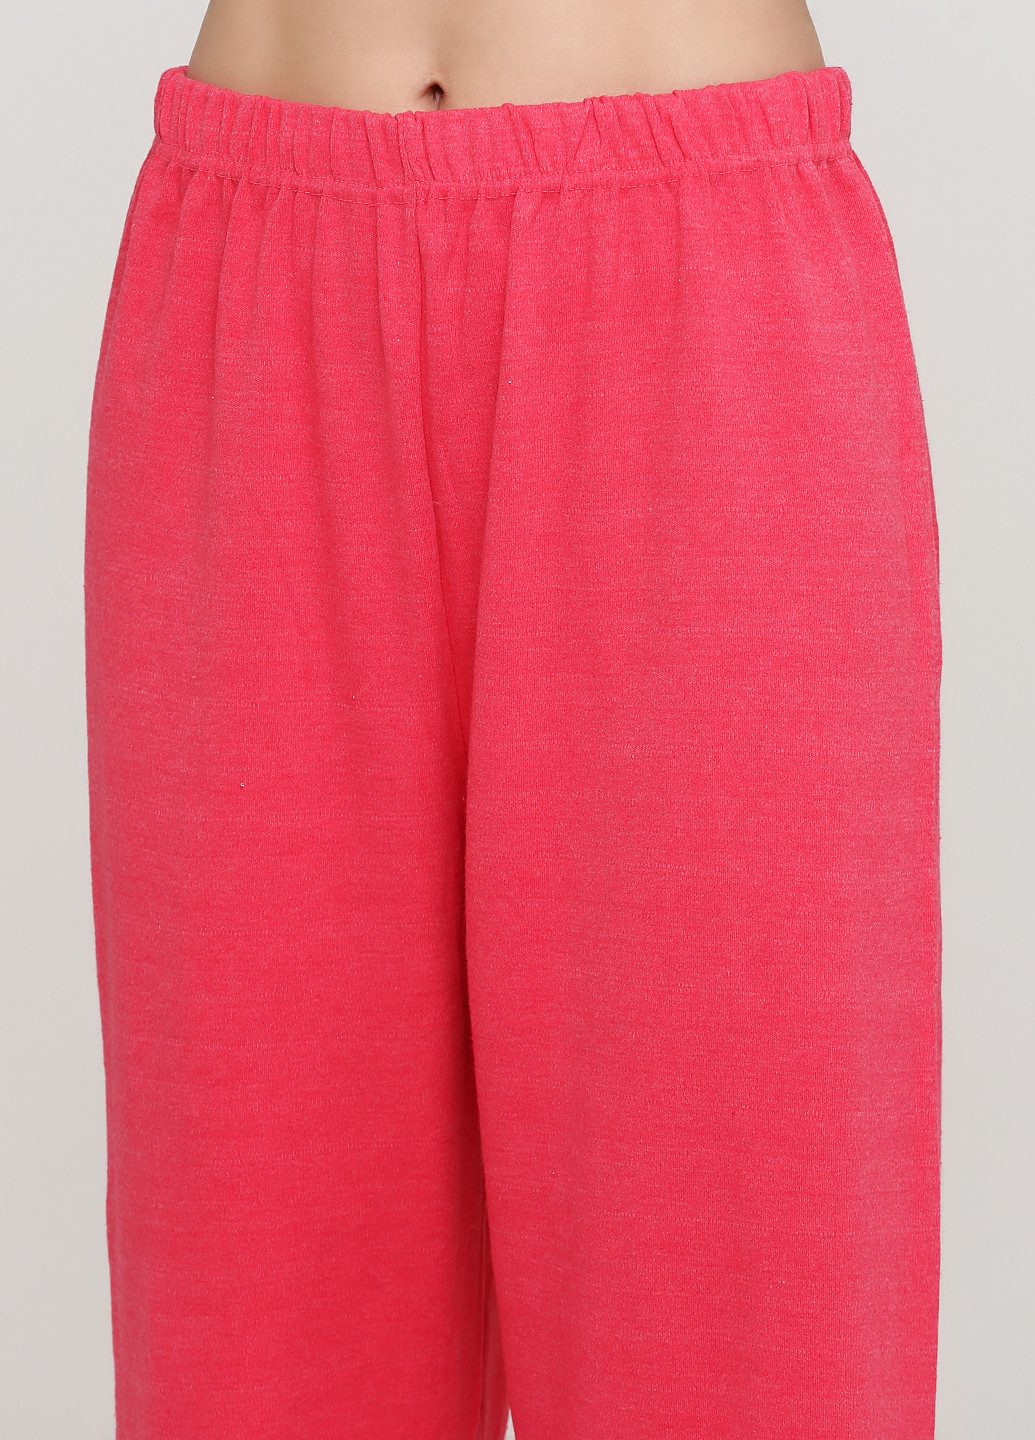 Фуксиновая всесезон пижама (лонгслив, брюки) лонгслив + брюки Glisa